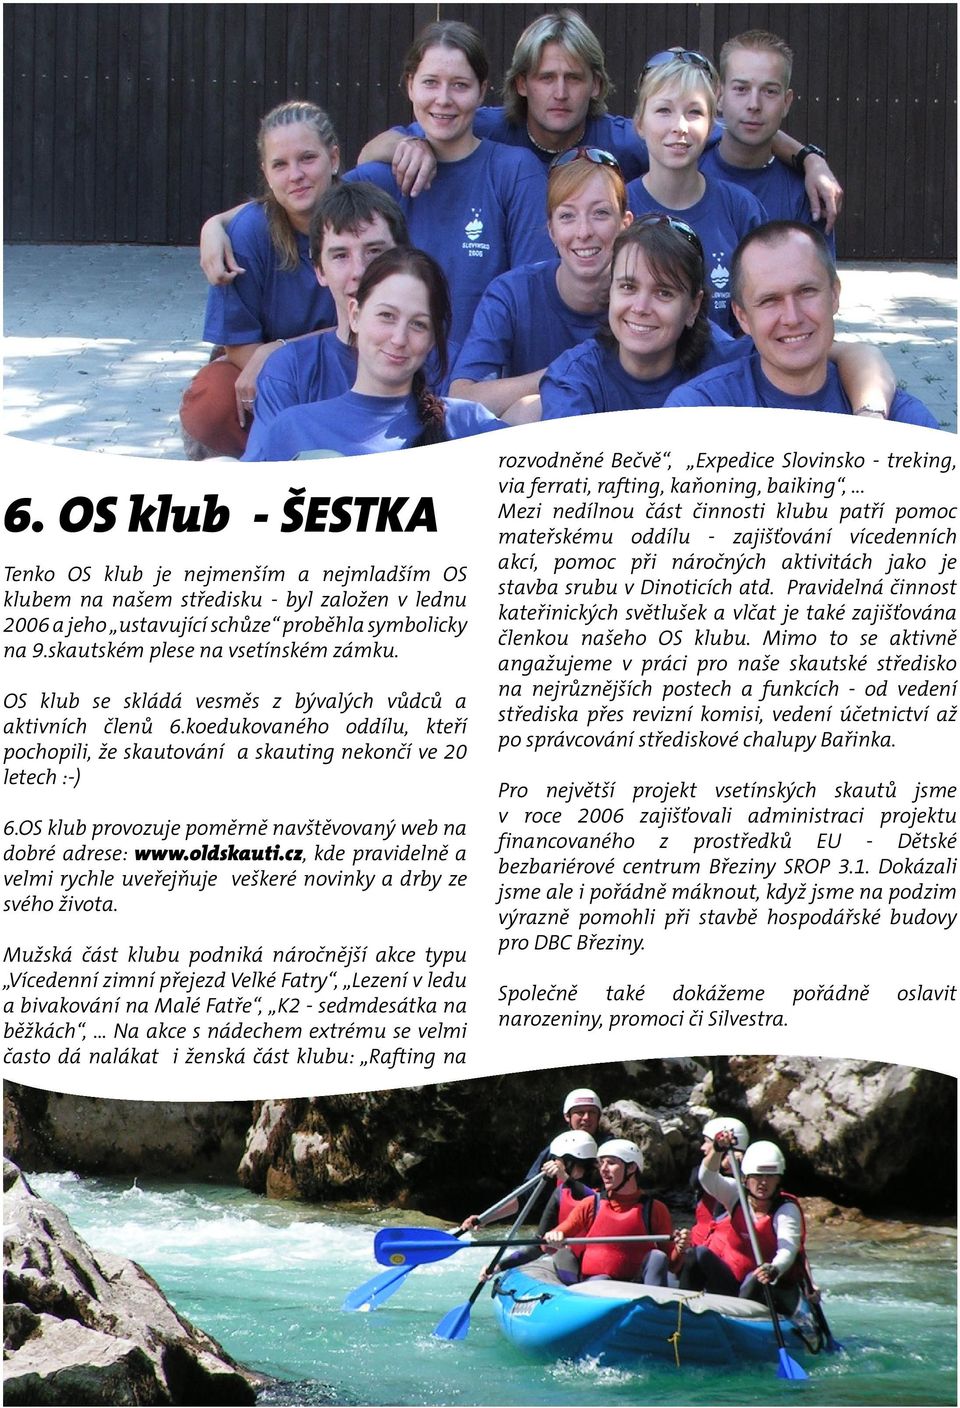 OS klub provozuje poměrně navštěvovaný web na dobré adrese: www.oldskauti.cz, kde pravidelně a velmi rychle uveřejňuje veškeré novinky a drby ze svého života.